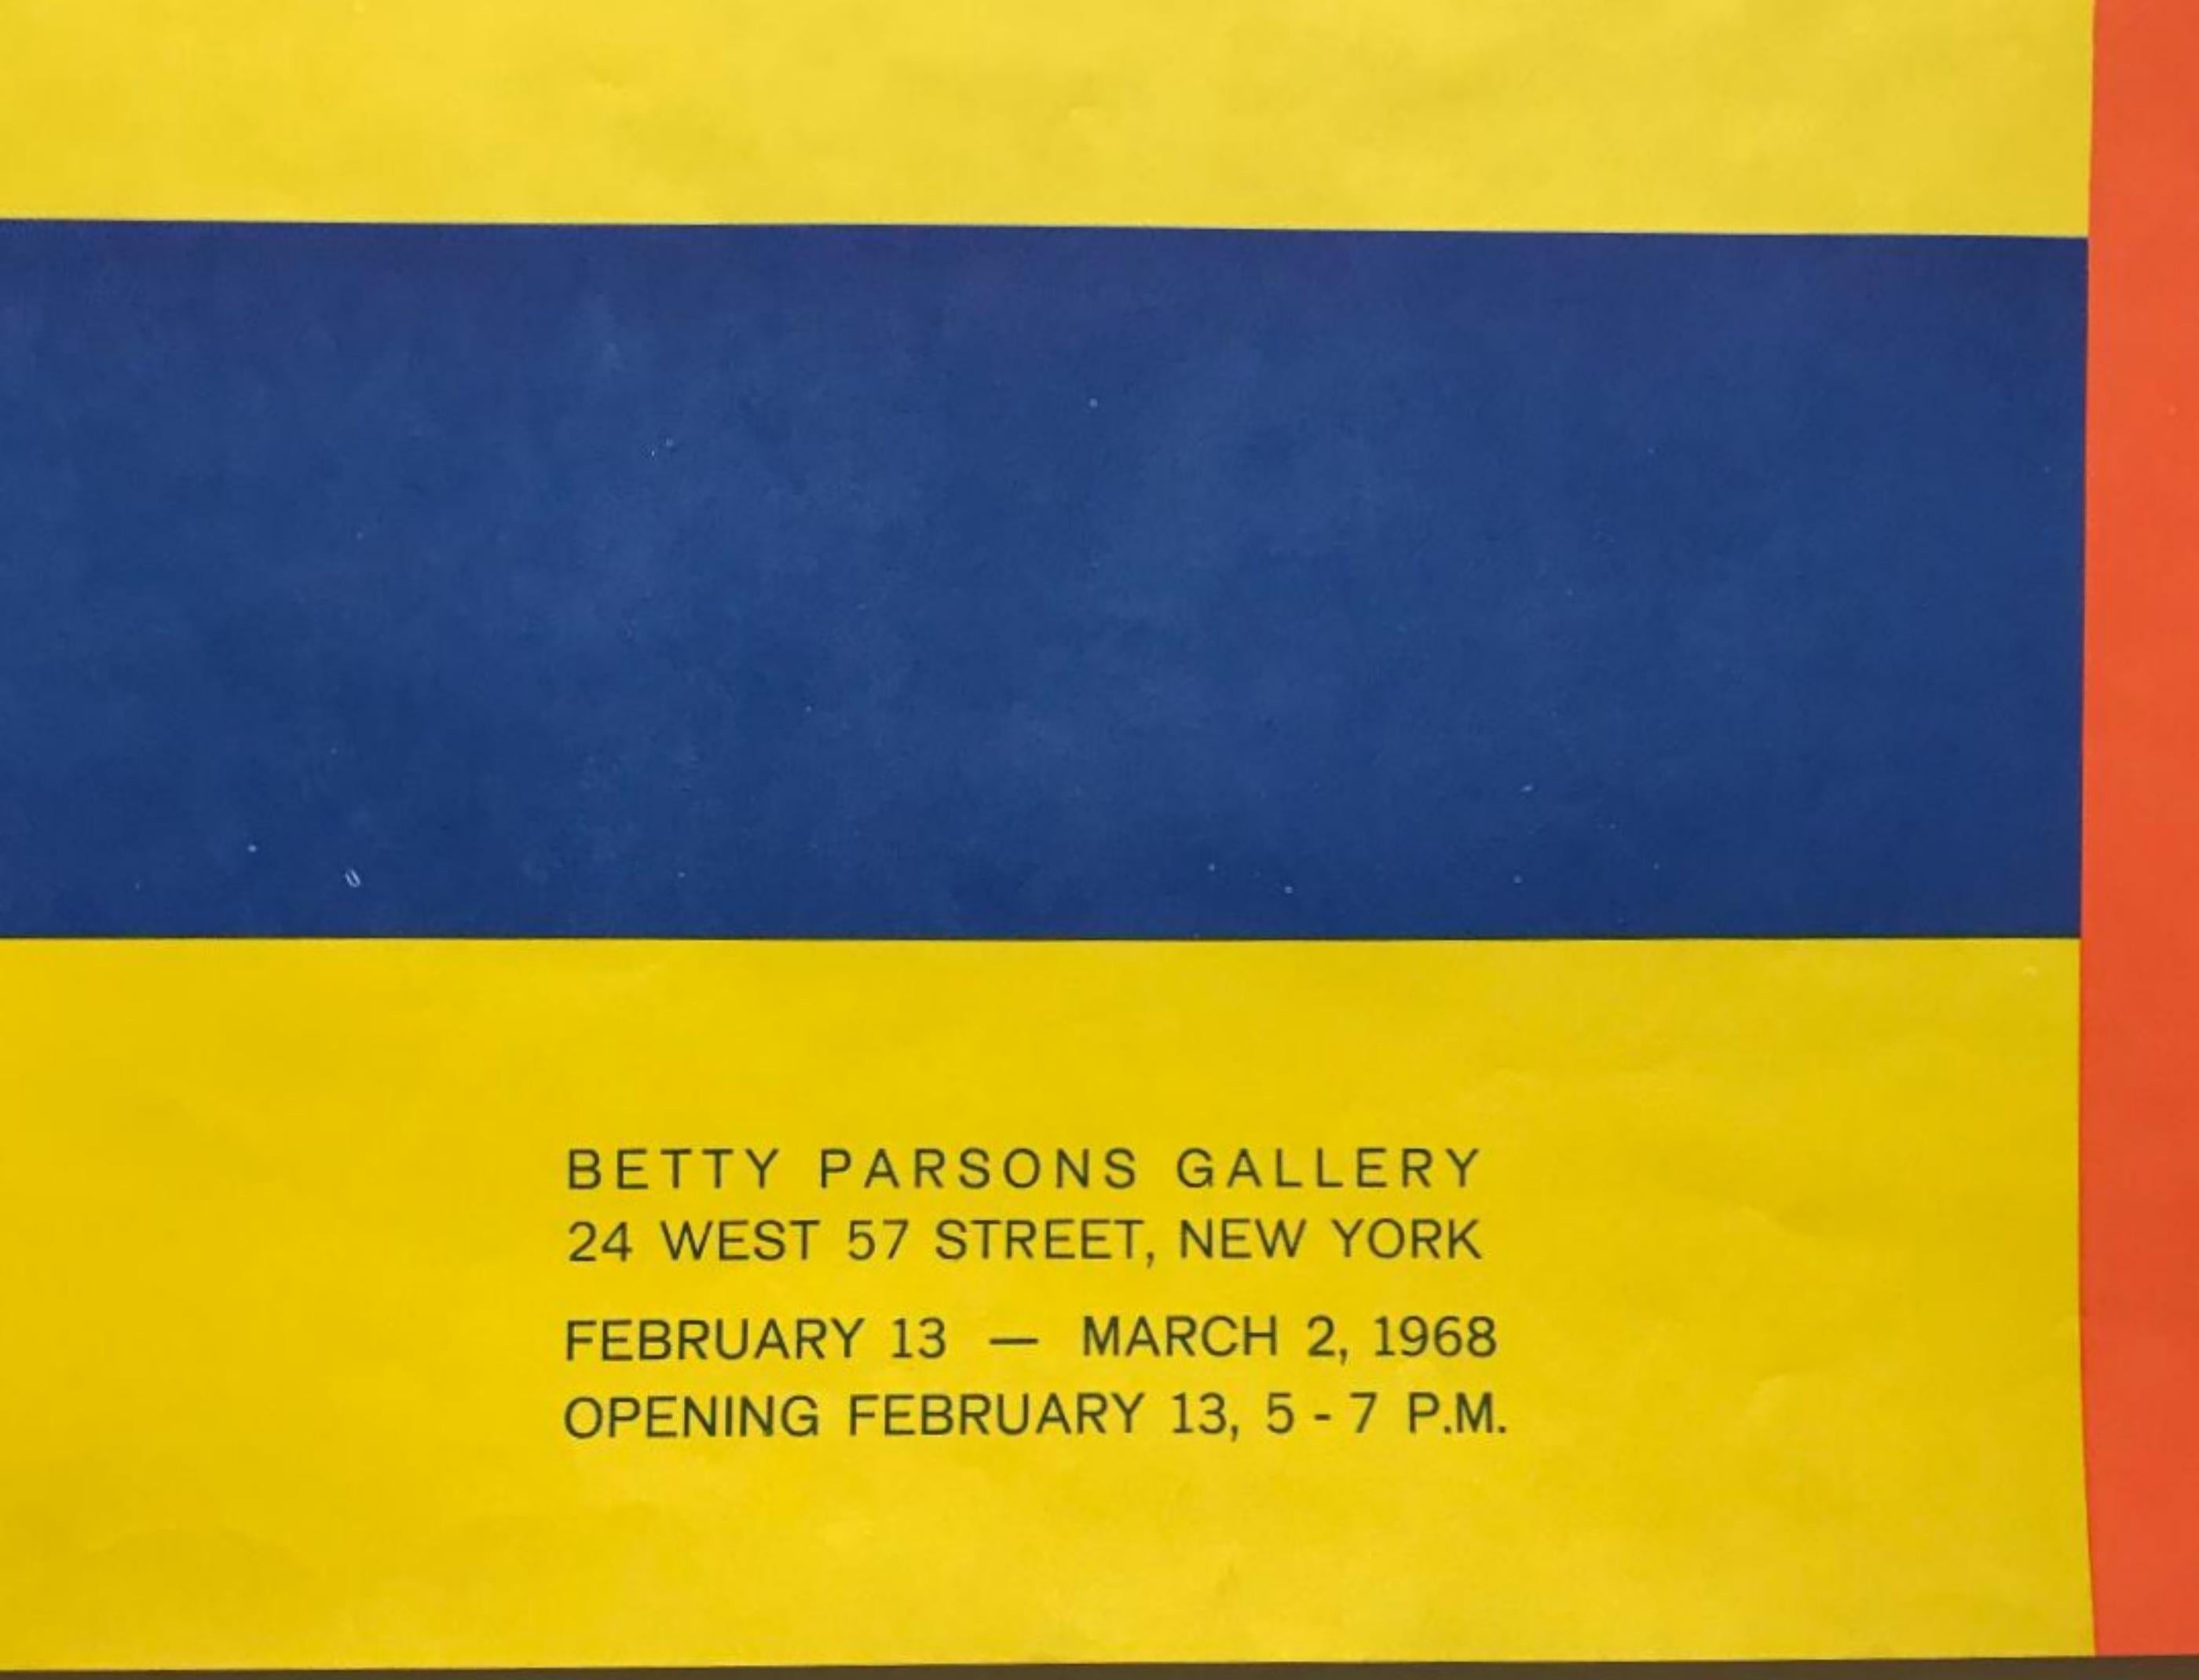 Lyman Kipp
Kipp, à la Betty Parsons Gallery, 1968
Rare sérigraphie d'annonce minimaliste
24 × 13 1/4 pouces
Non encadré
Extrêmement rare. Si vous lisez cette liste, c'est que vous connaissez Lyman Kipp, Betty Parsons, le minimalisme des années 1960